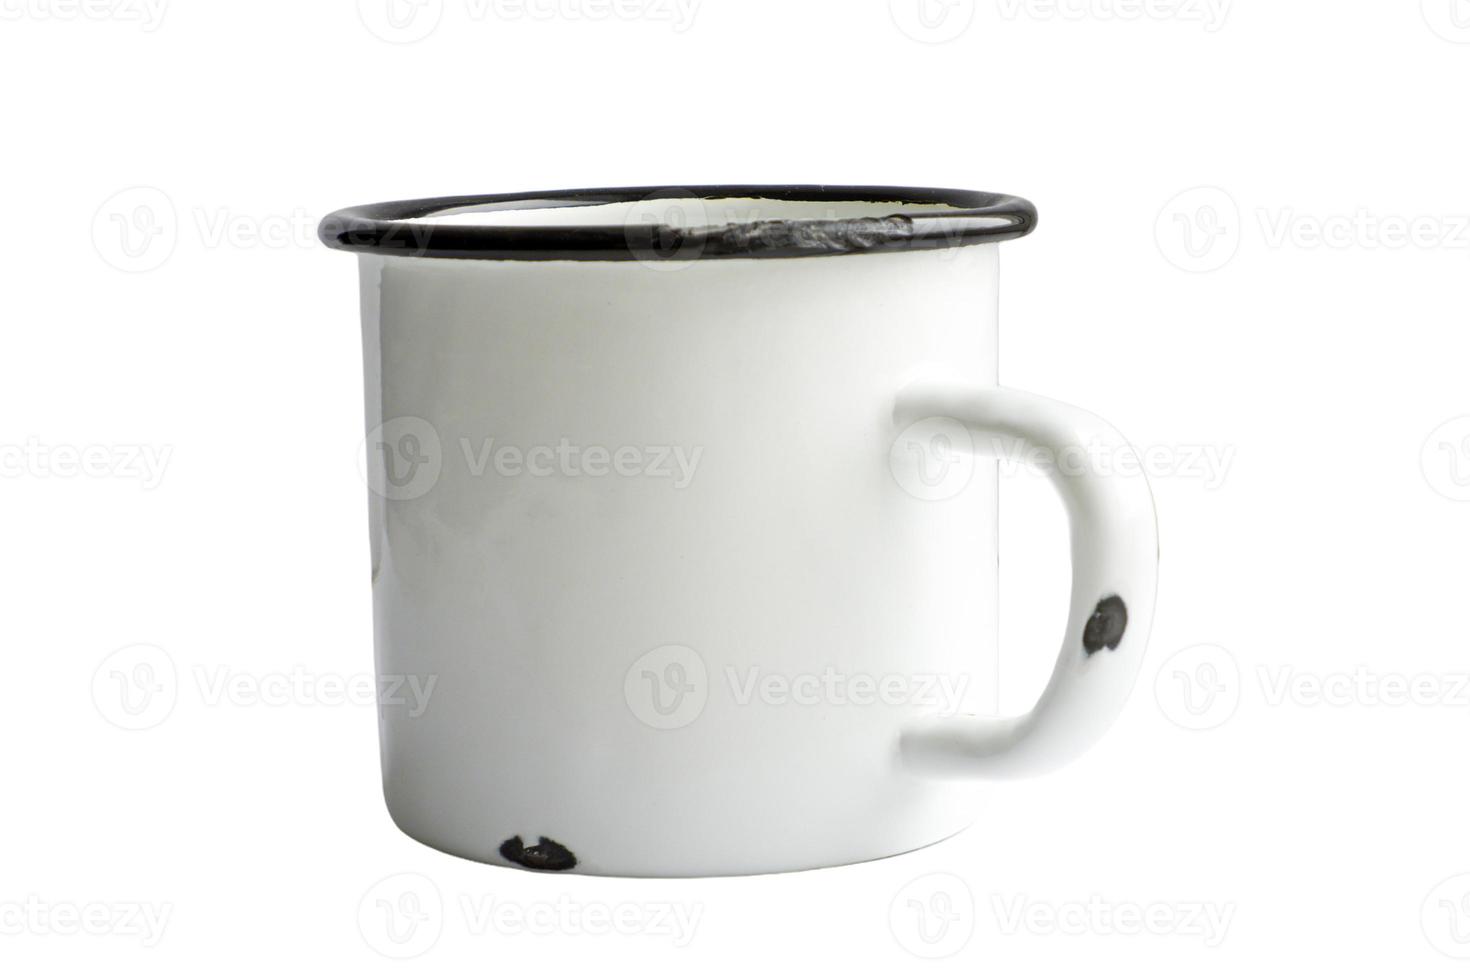 maquette de tasse en émail blanc blanc isolé sur fond blanc. tasse vierge pour la marque. photo haute résolution.